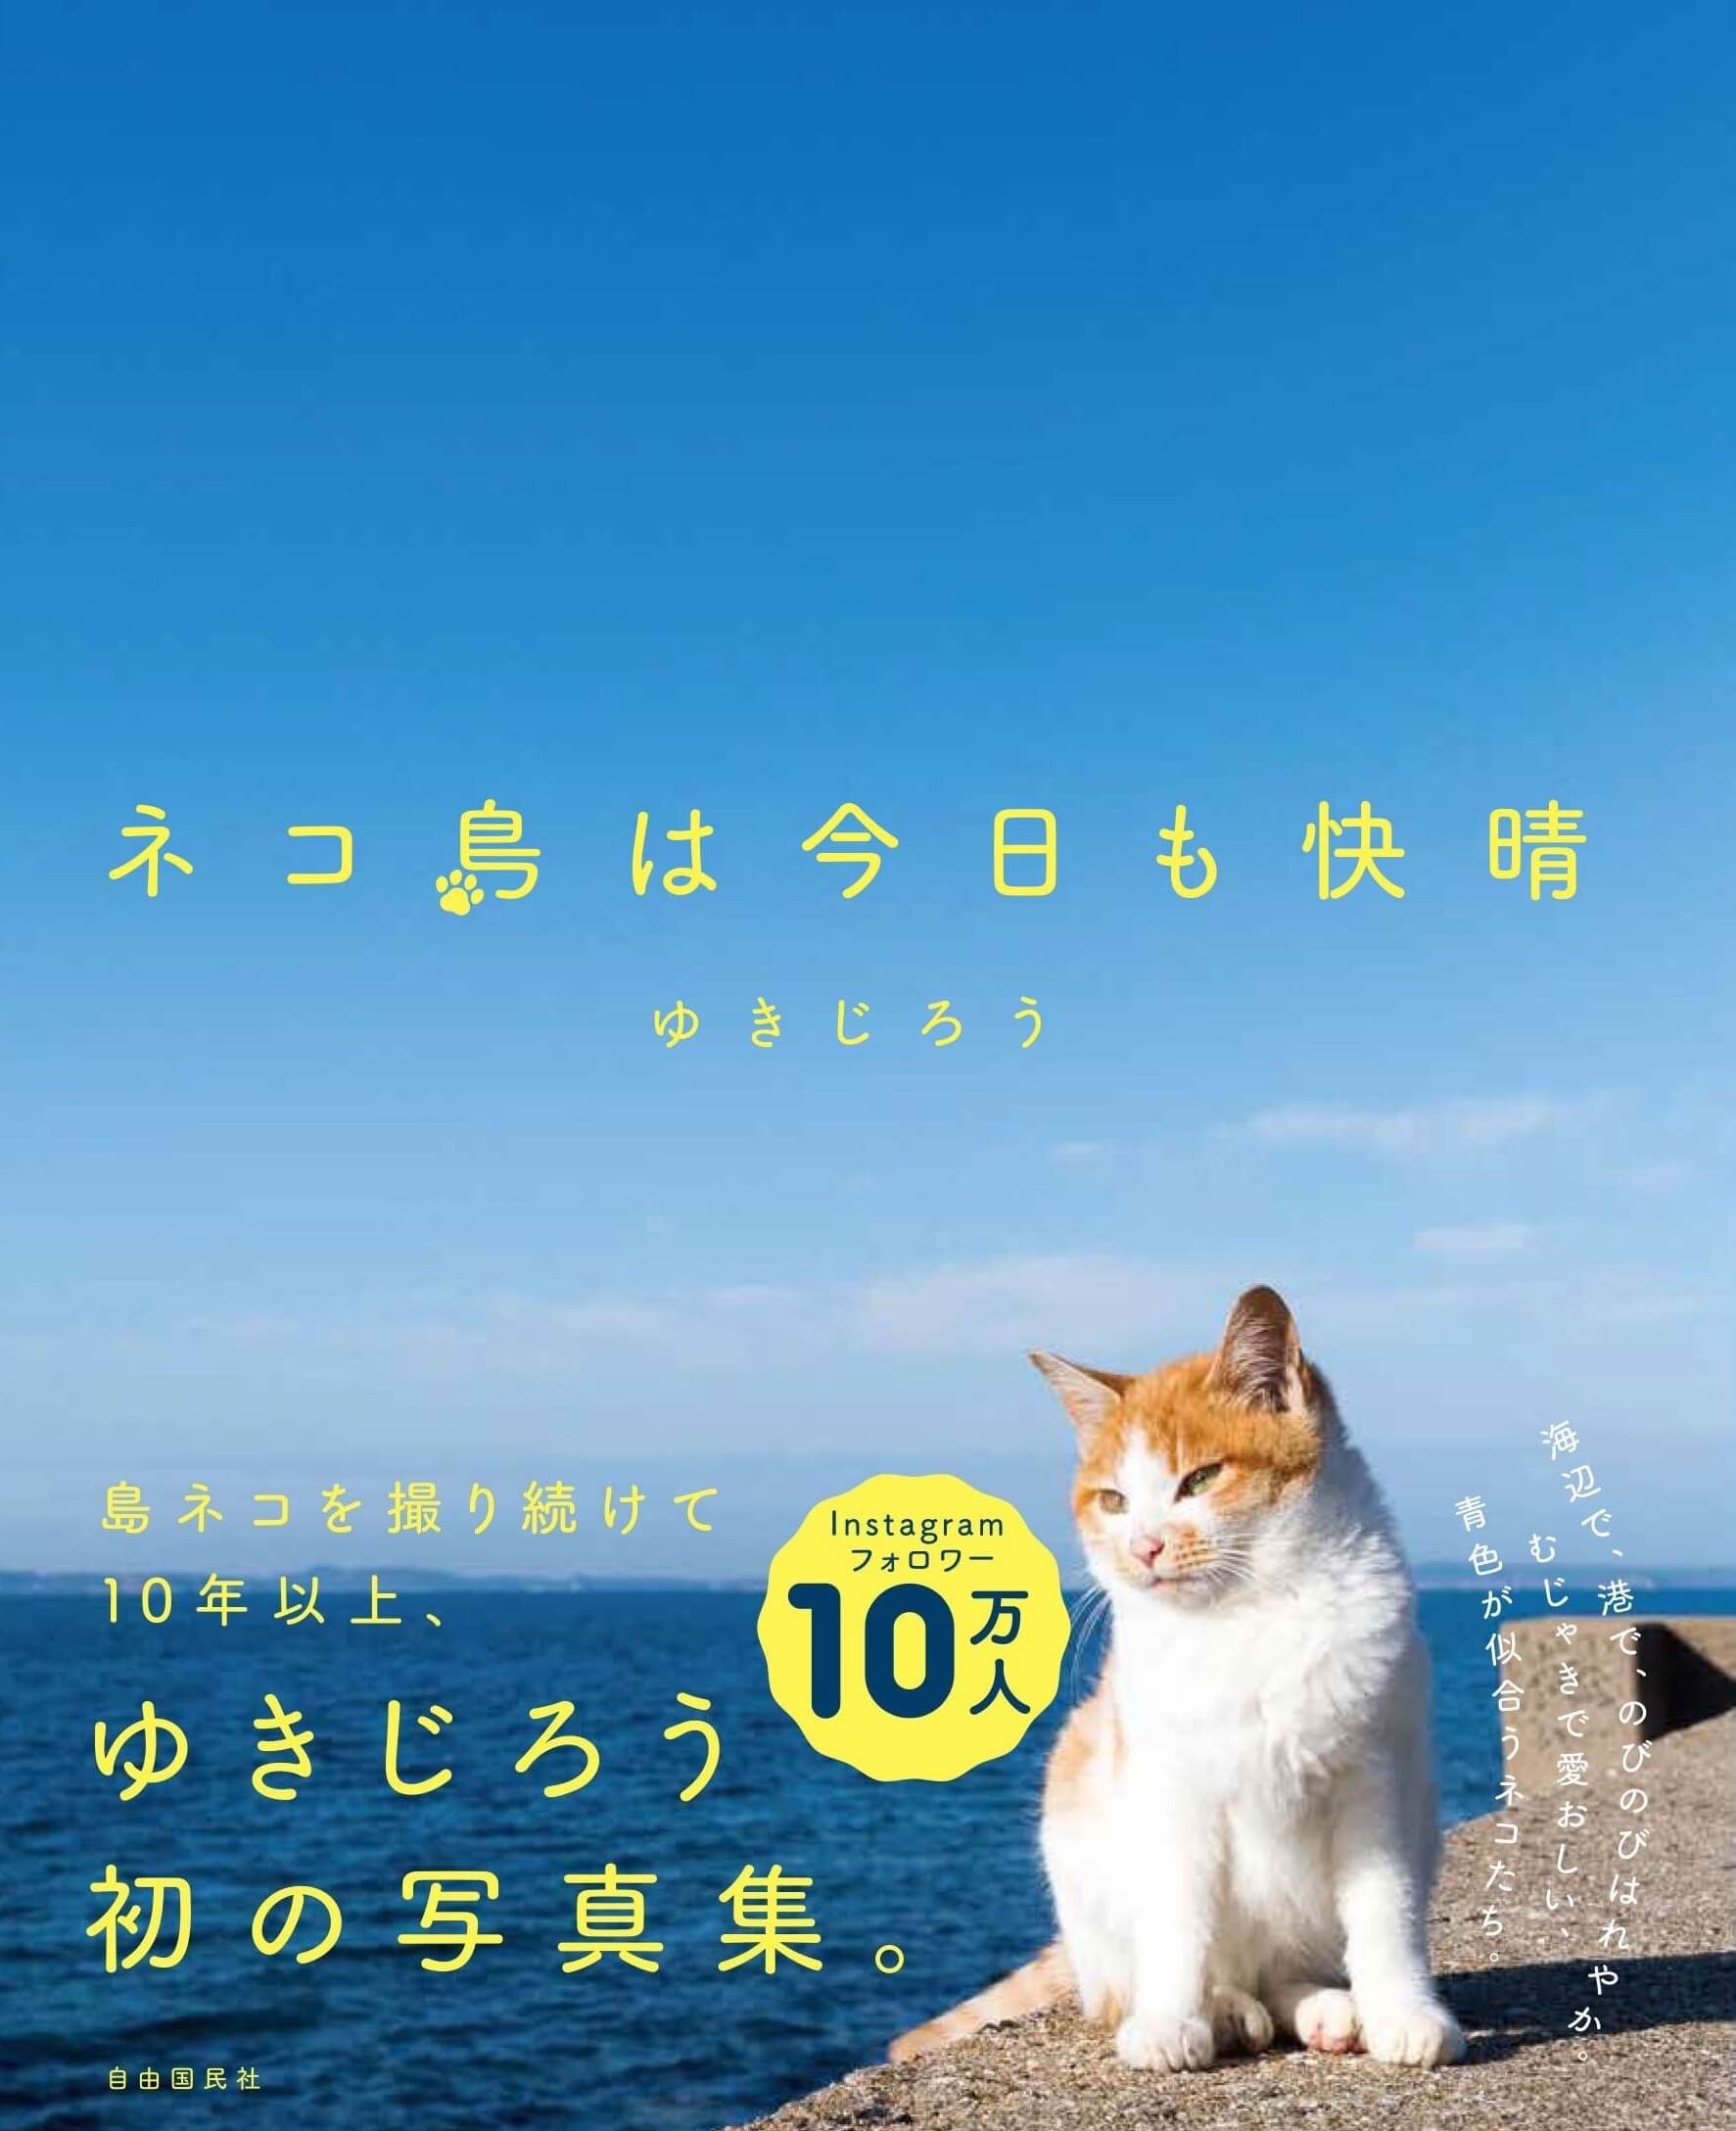 島で暮らす猫たちの日常を捉えた写真集『ネコ島は今日も快晴』 by ゆきじろう